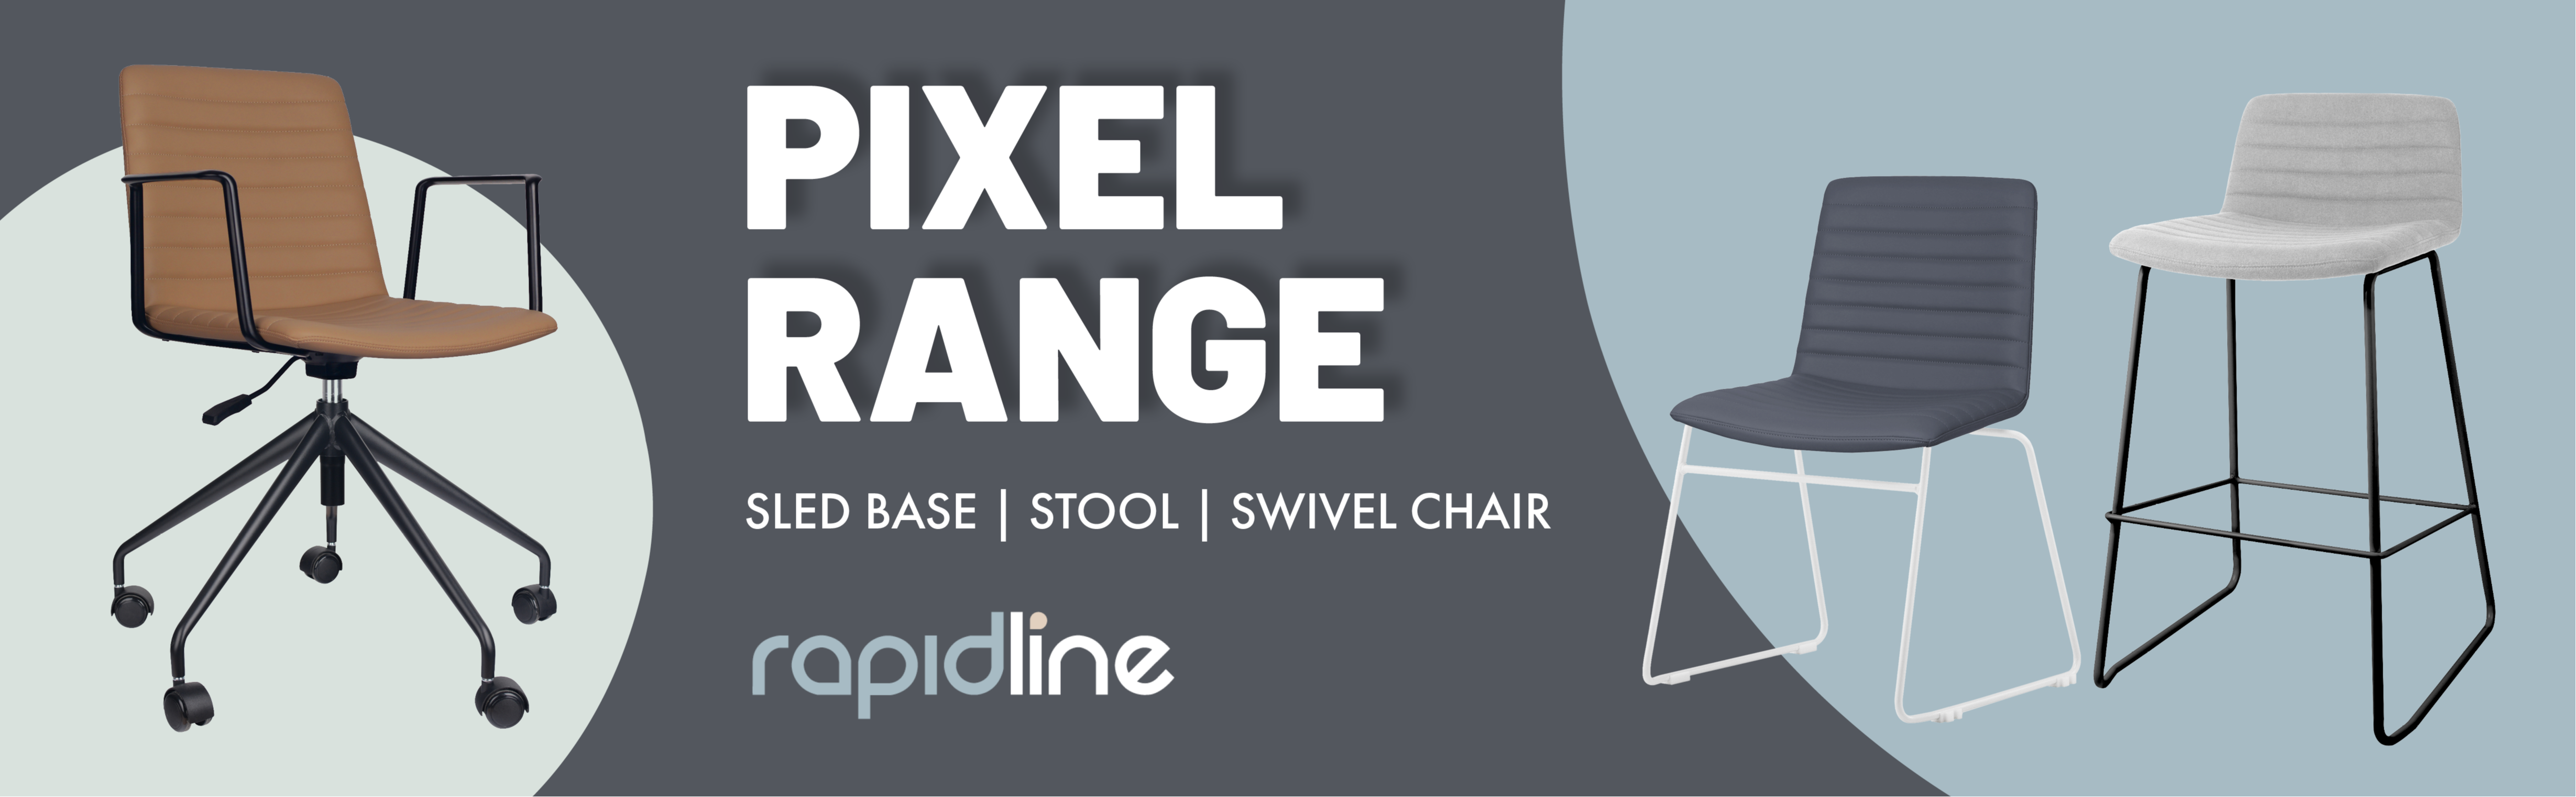 New Pixel chairs range